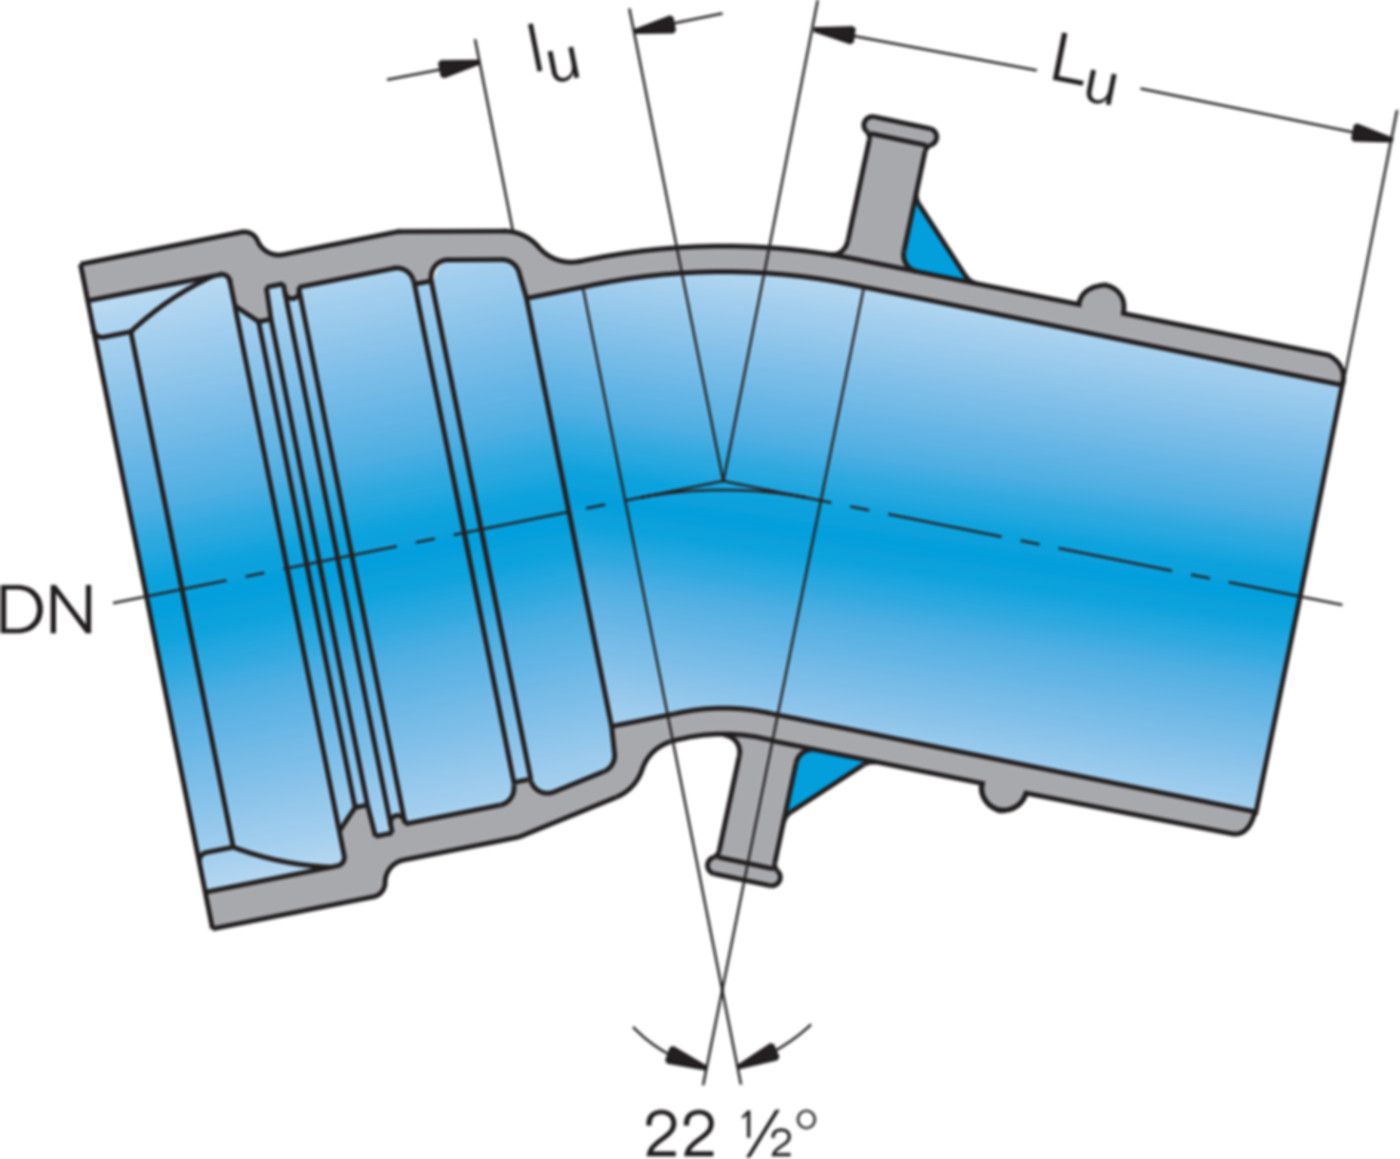 1-Muffe-Bogen MK 22° System BLS DN 80 - Frischhut Steckmuffenformstücke